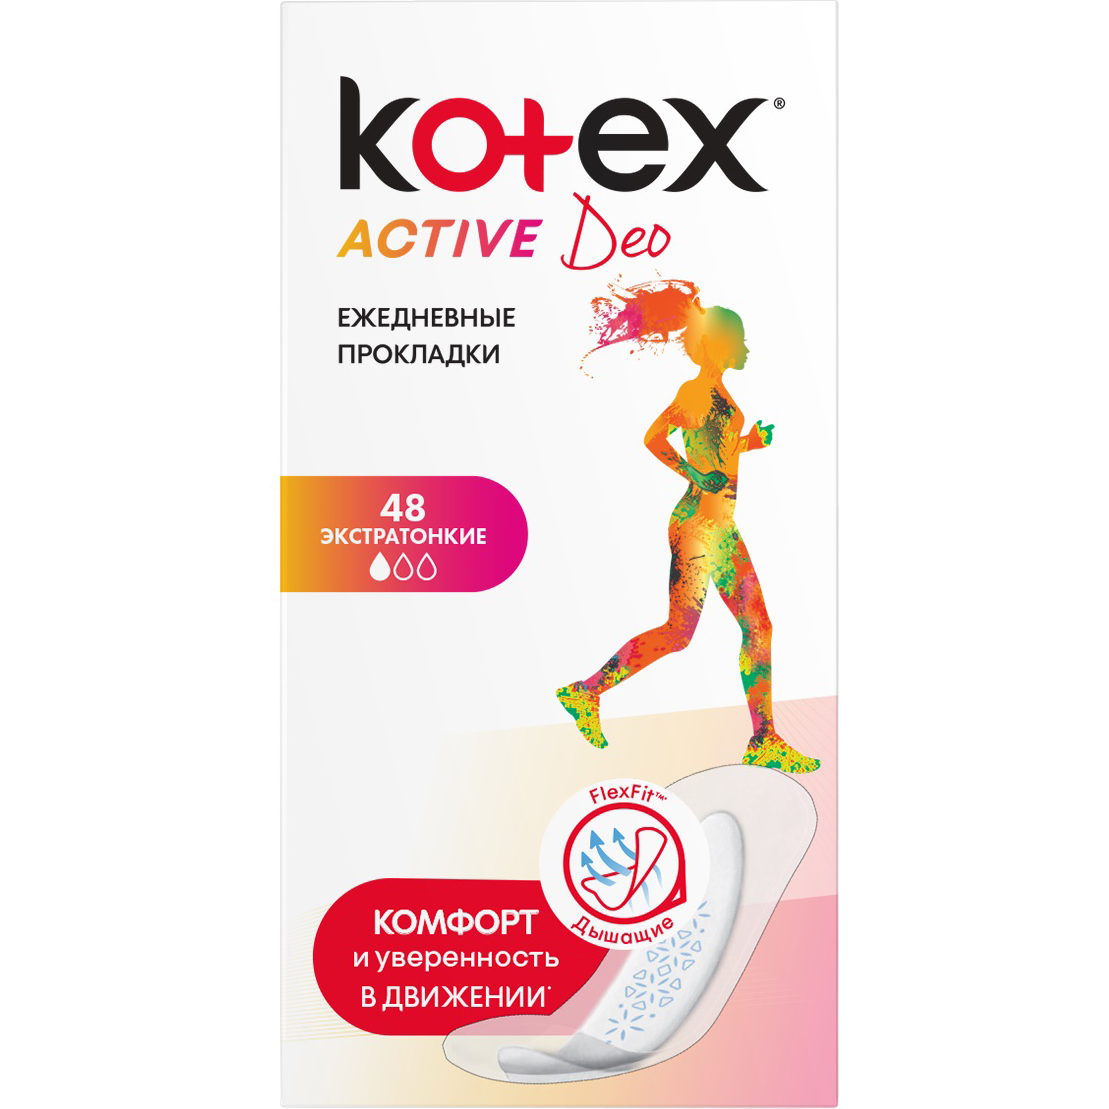 Прокладки Kotex Active Deo Экстратонкие 48 шт тампоны kotex active нормал 16 шт